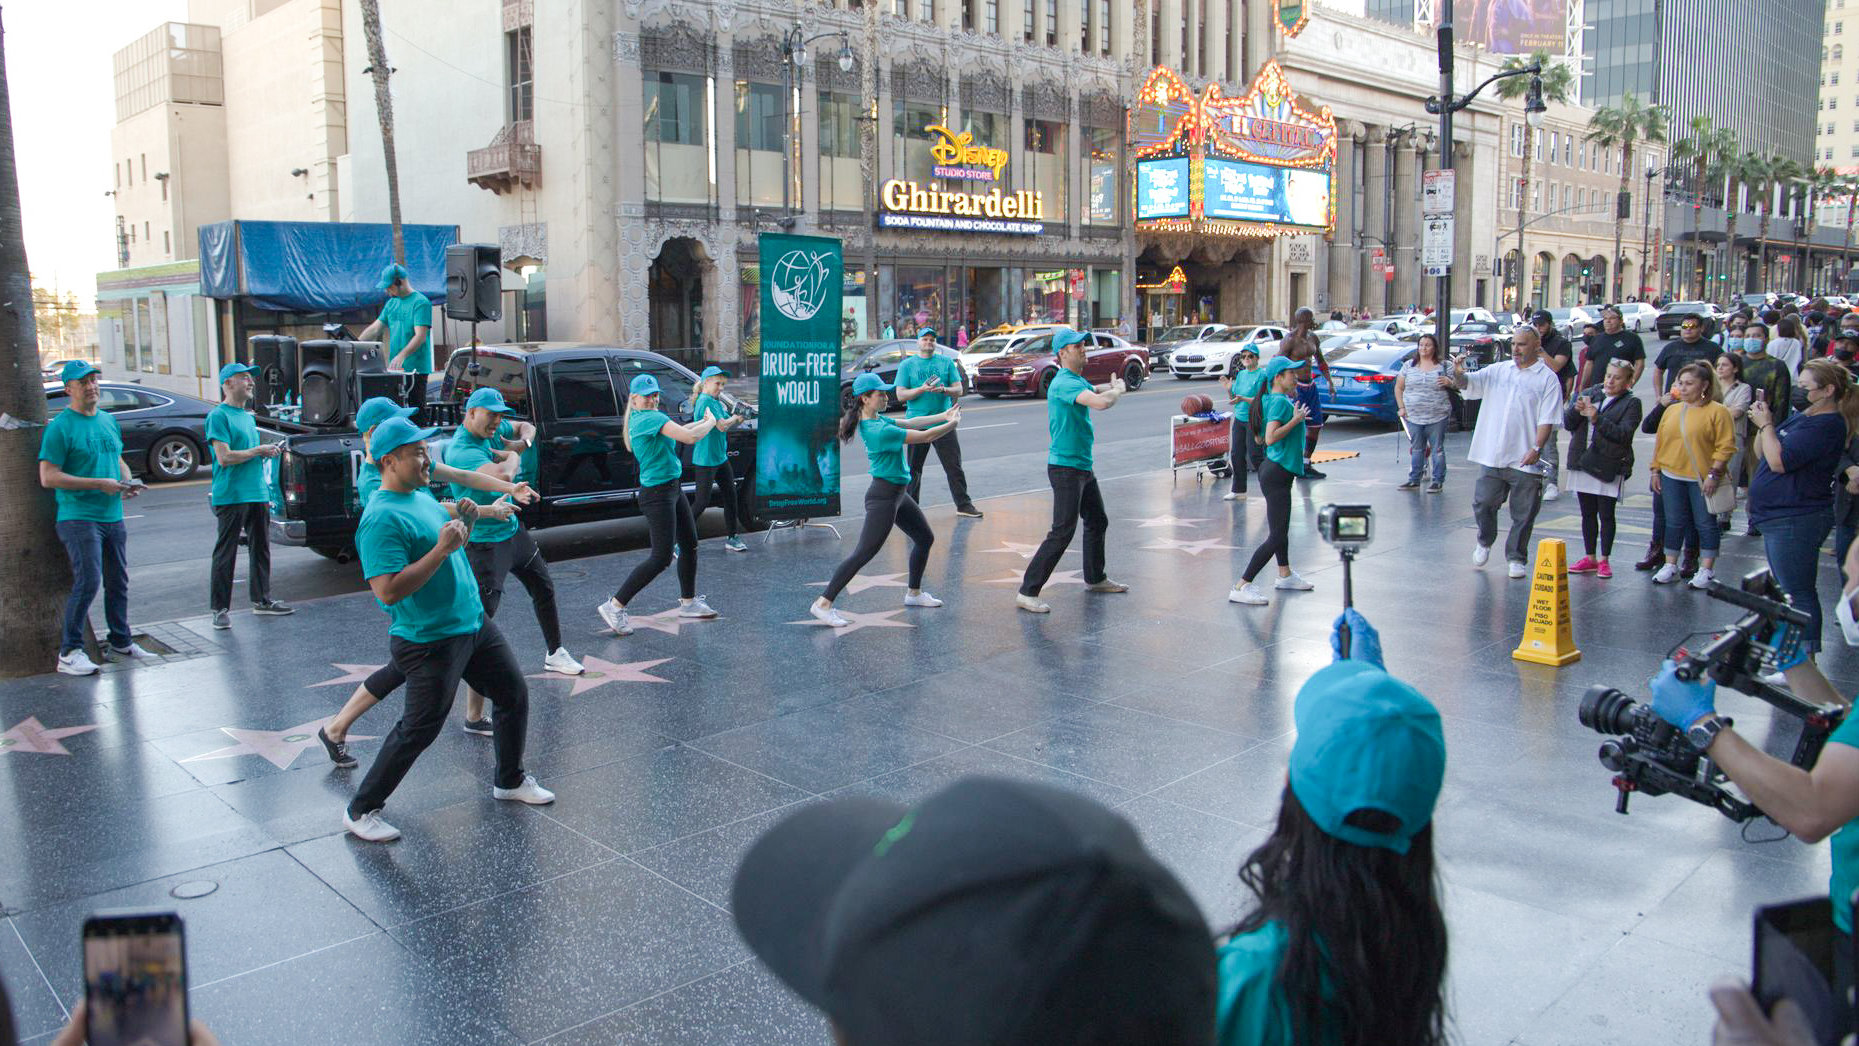 Εθελοντές από το Ίδρυμα για Έναν Κόσμο Χωρίς Ναρκωτικά εκπλήσσουν τα πλήθη στη διάσημη Λεωφόρο της Δόξας του Χόλιγουντ με ένα flash mob για να προωθήσουν τη ζωή χωρίς ναρκωτικά.